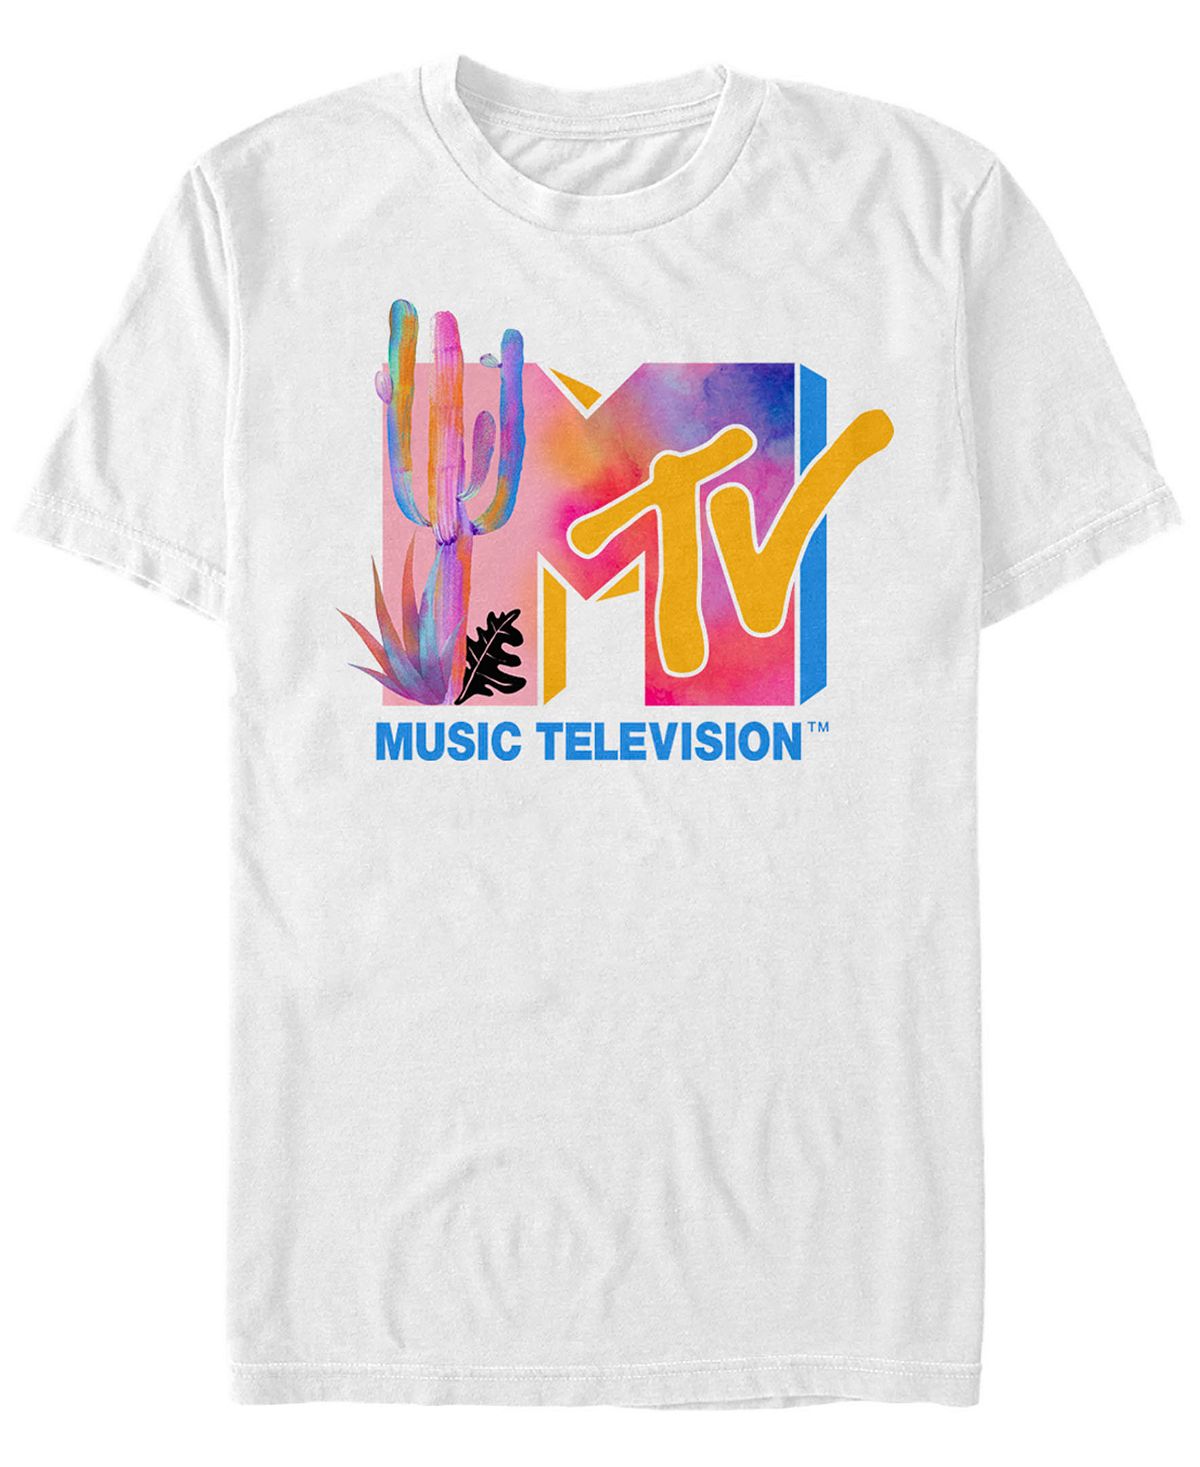 Мужская красочная футболка с короткими рукавами и логотипом цвета воды пустыни Fifth Sun, белый пульт для телевизора mystery mtv 4217lw